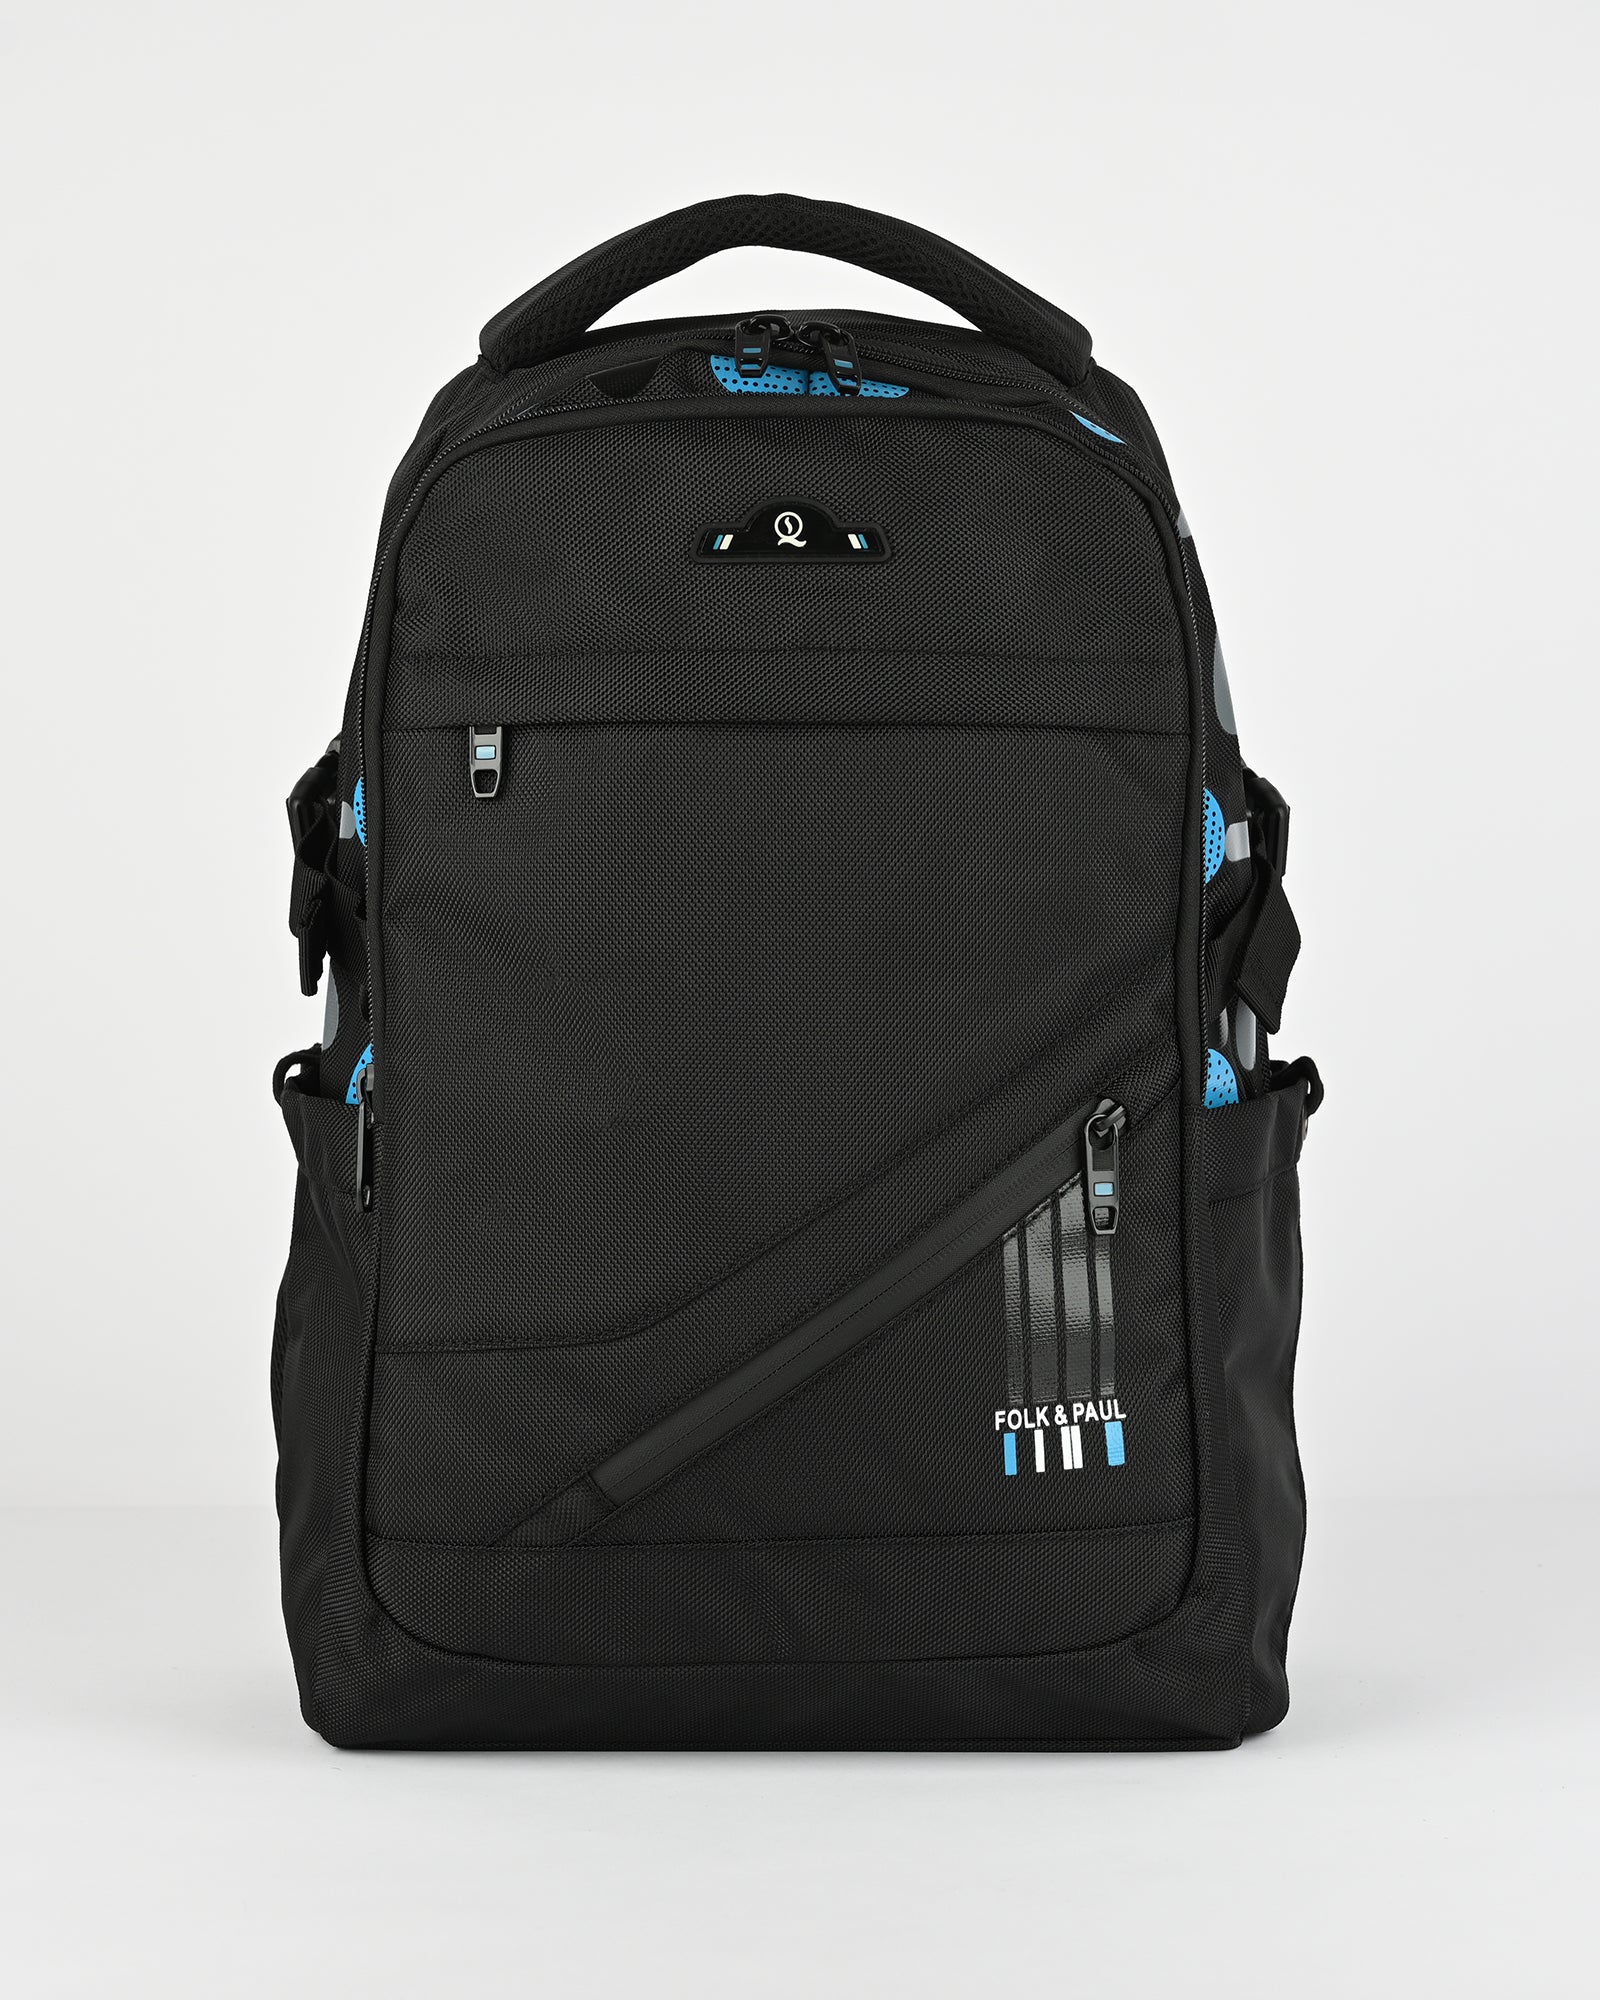 Zip front functional backpack